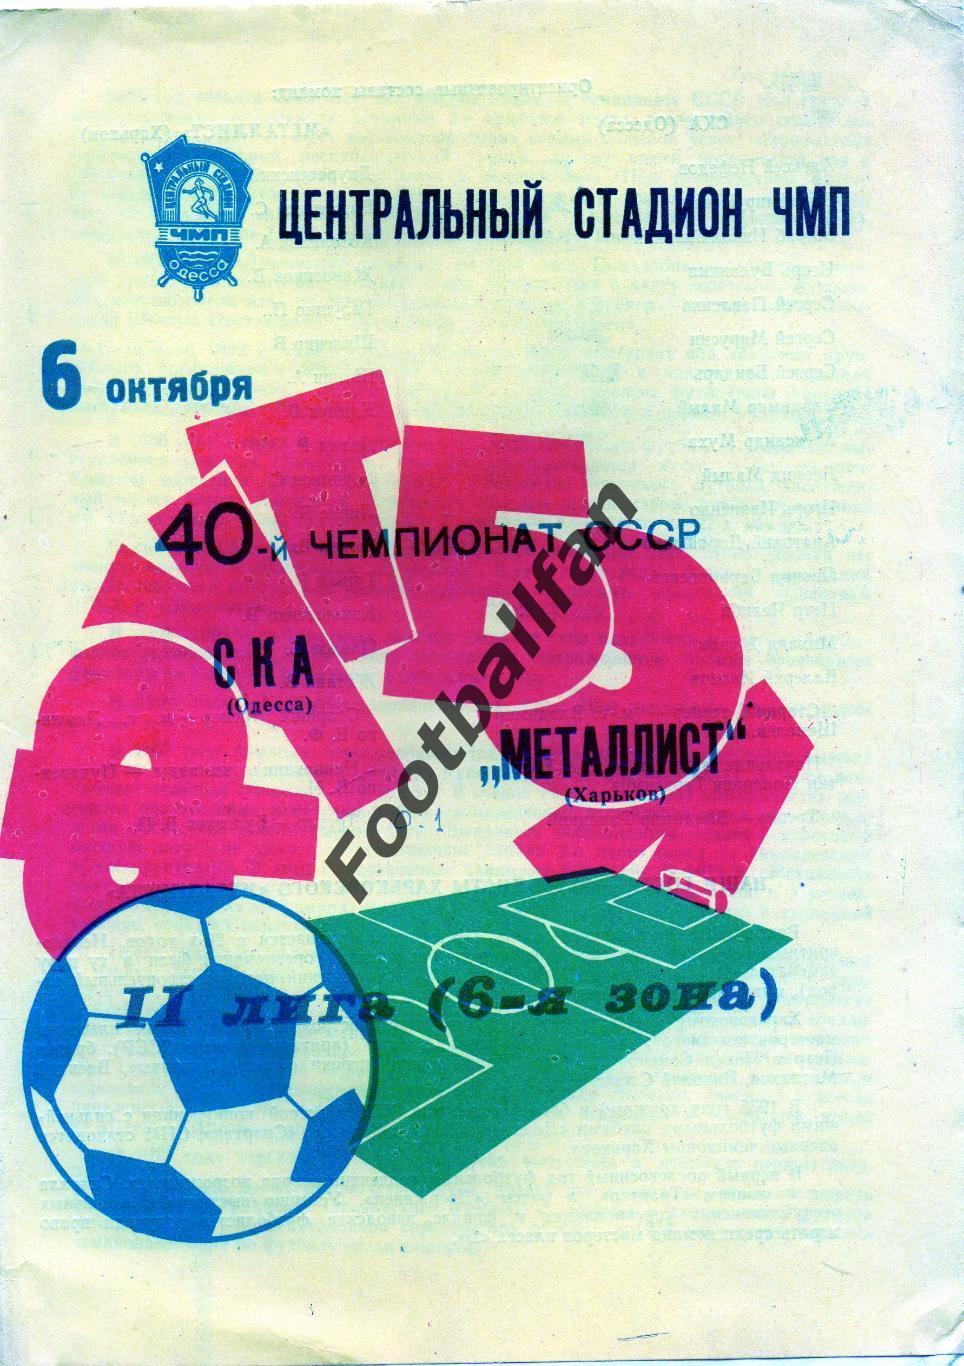 СКА Одесса - Металлист Харьков 06.10.1977 2-й вид обложки